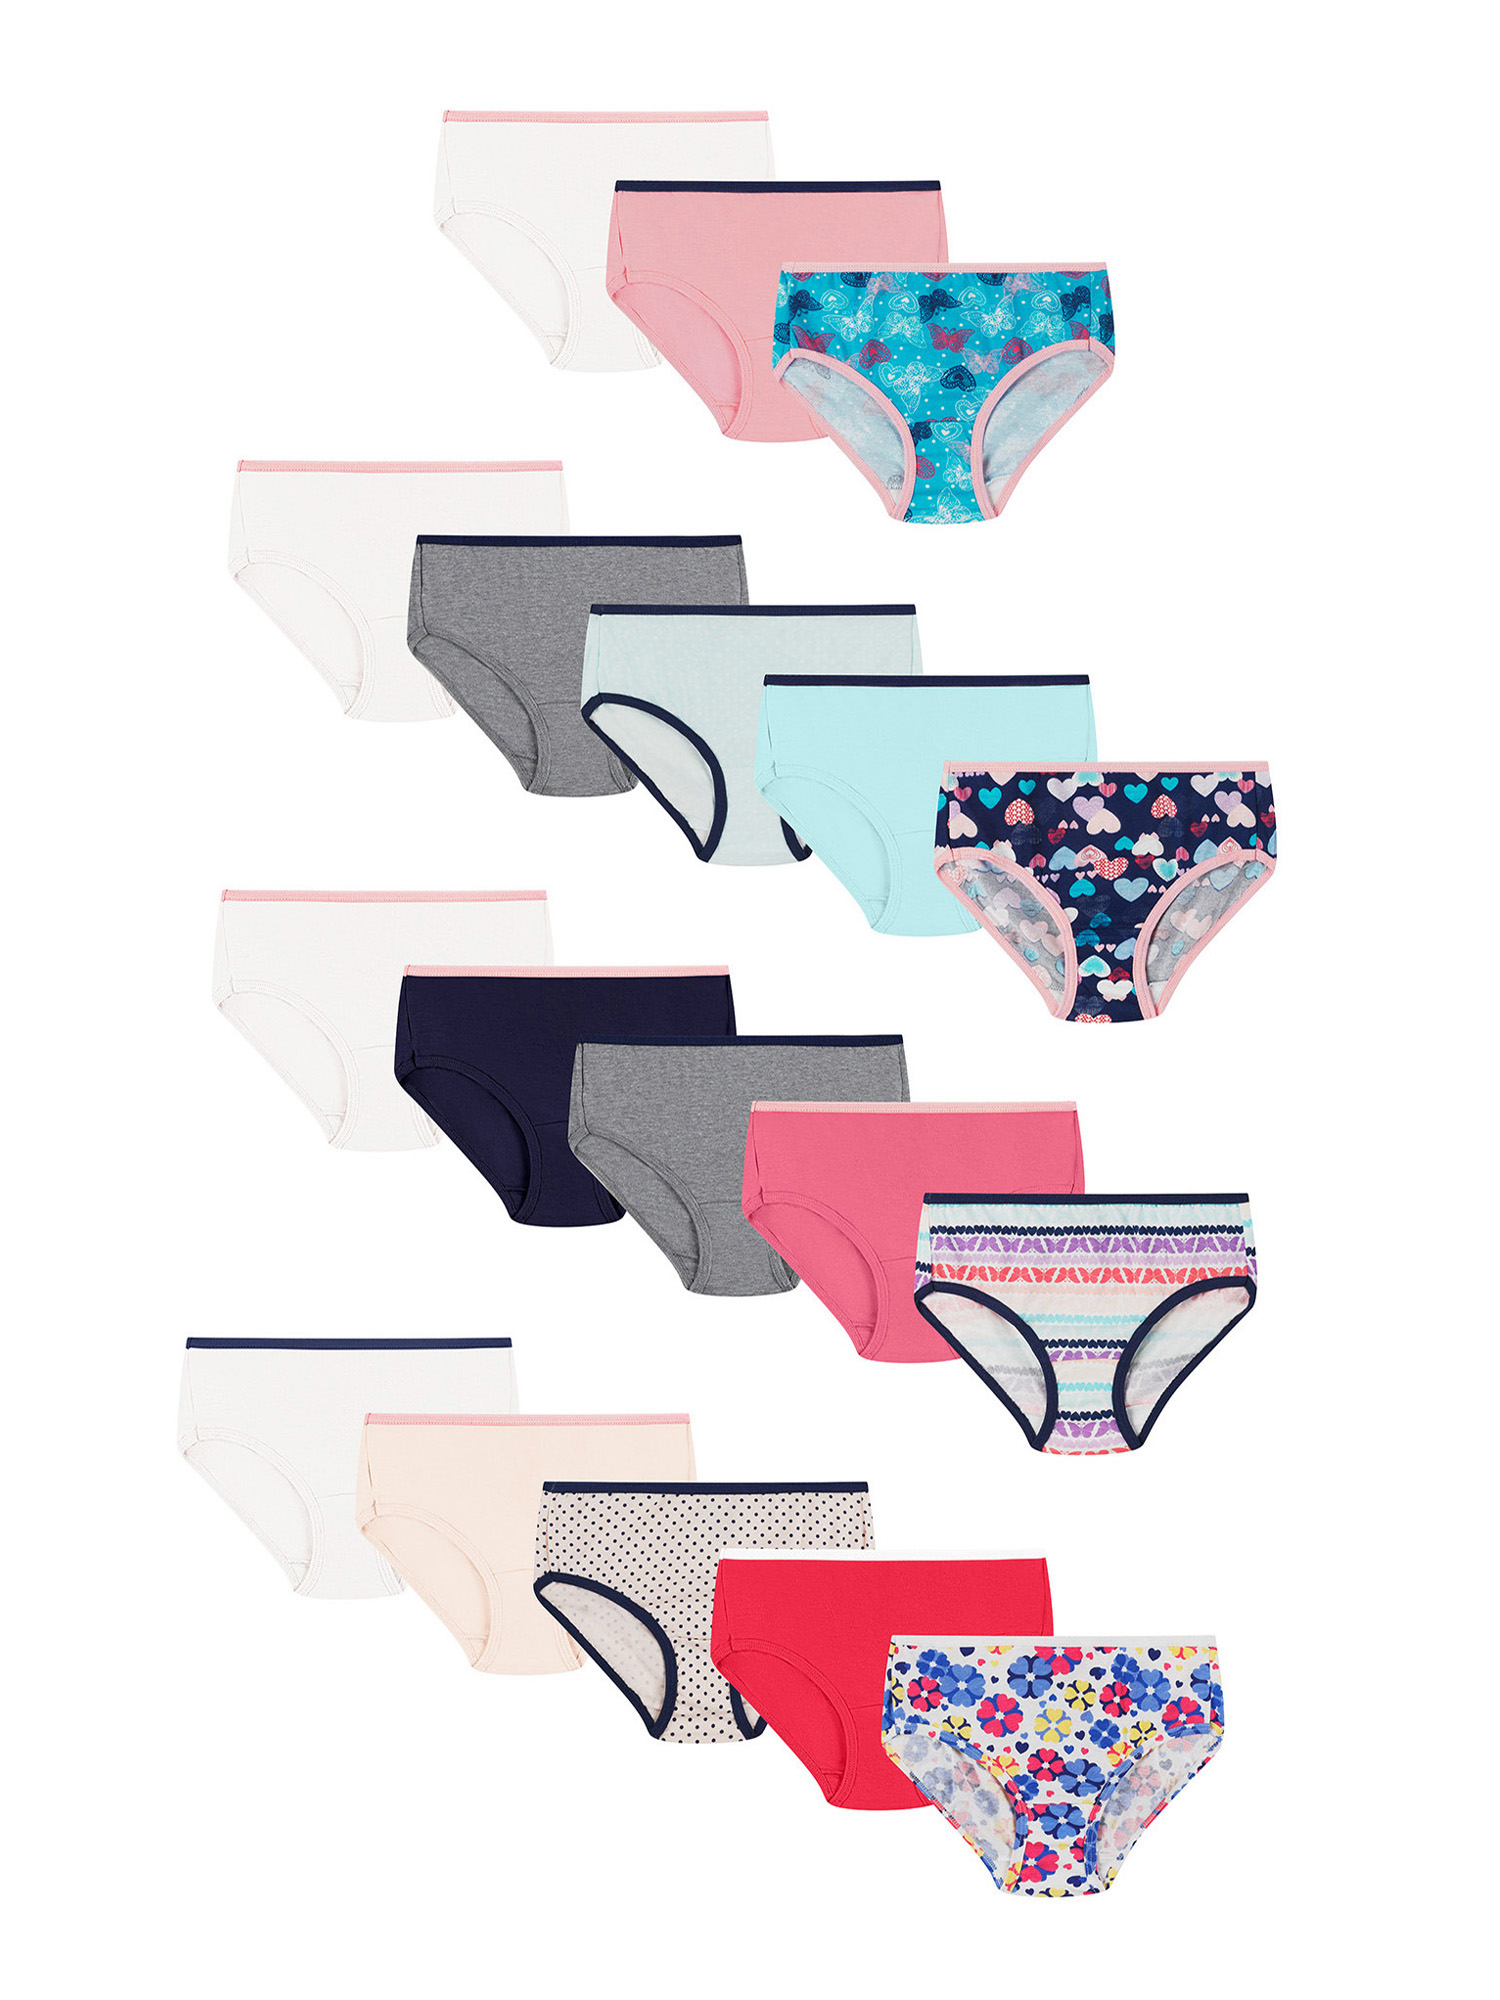 Hanes Girls Underwear Briefs, 14+4 Bonus Pack, Sizes 4-16 - image 1 of 4